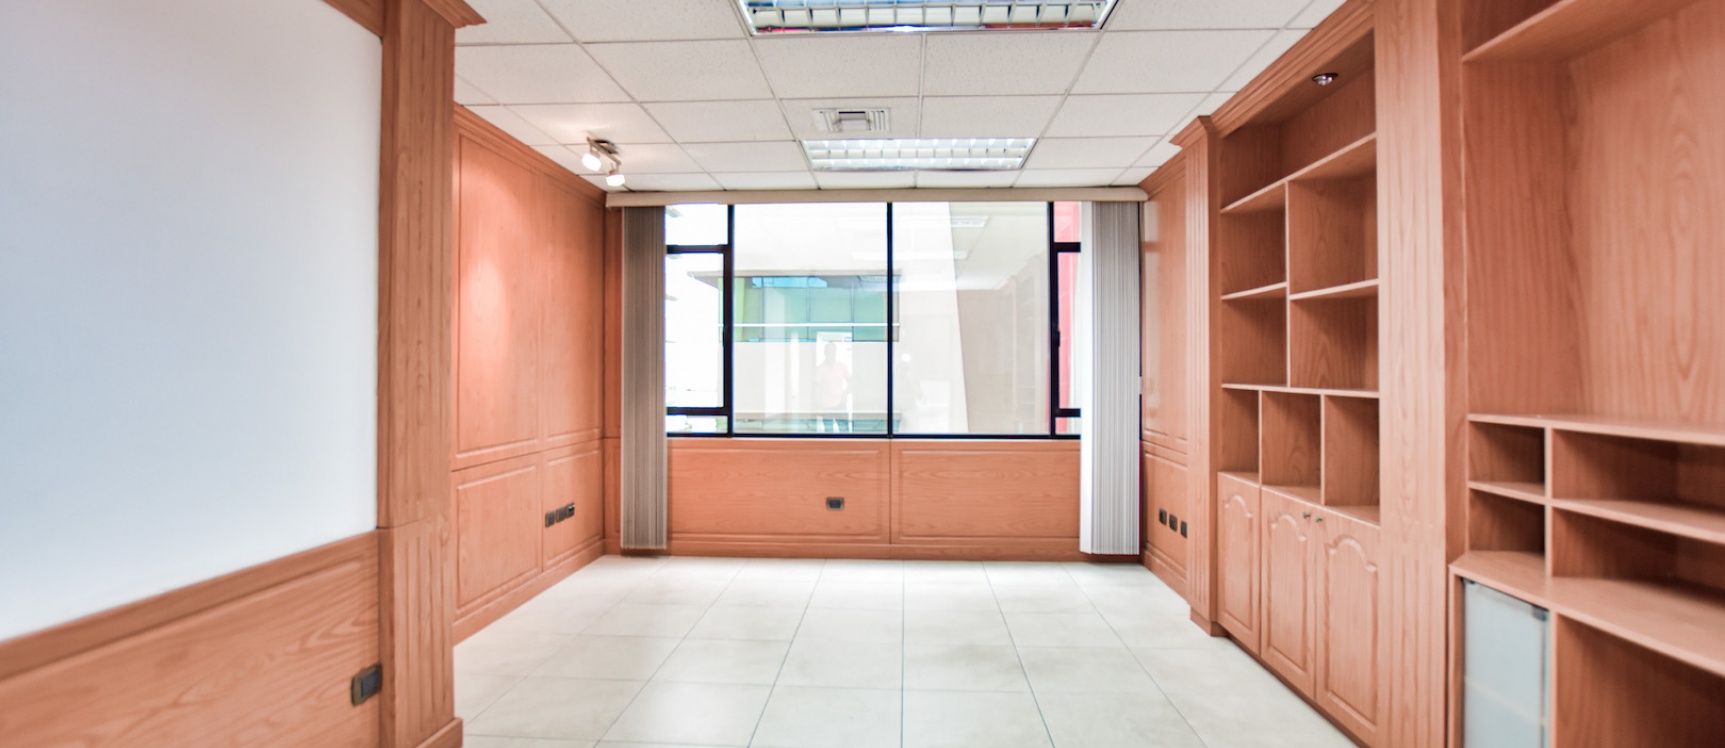 GeoBienes - Alquiler de Oficinas en Edificio Professional Center - Plusvalia Guayaquil Casas de venta y alquiler Inmobiliaria Ecuador